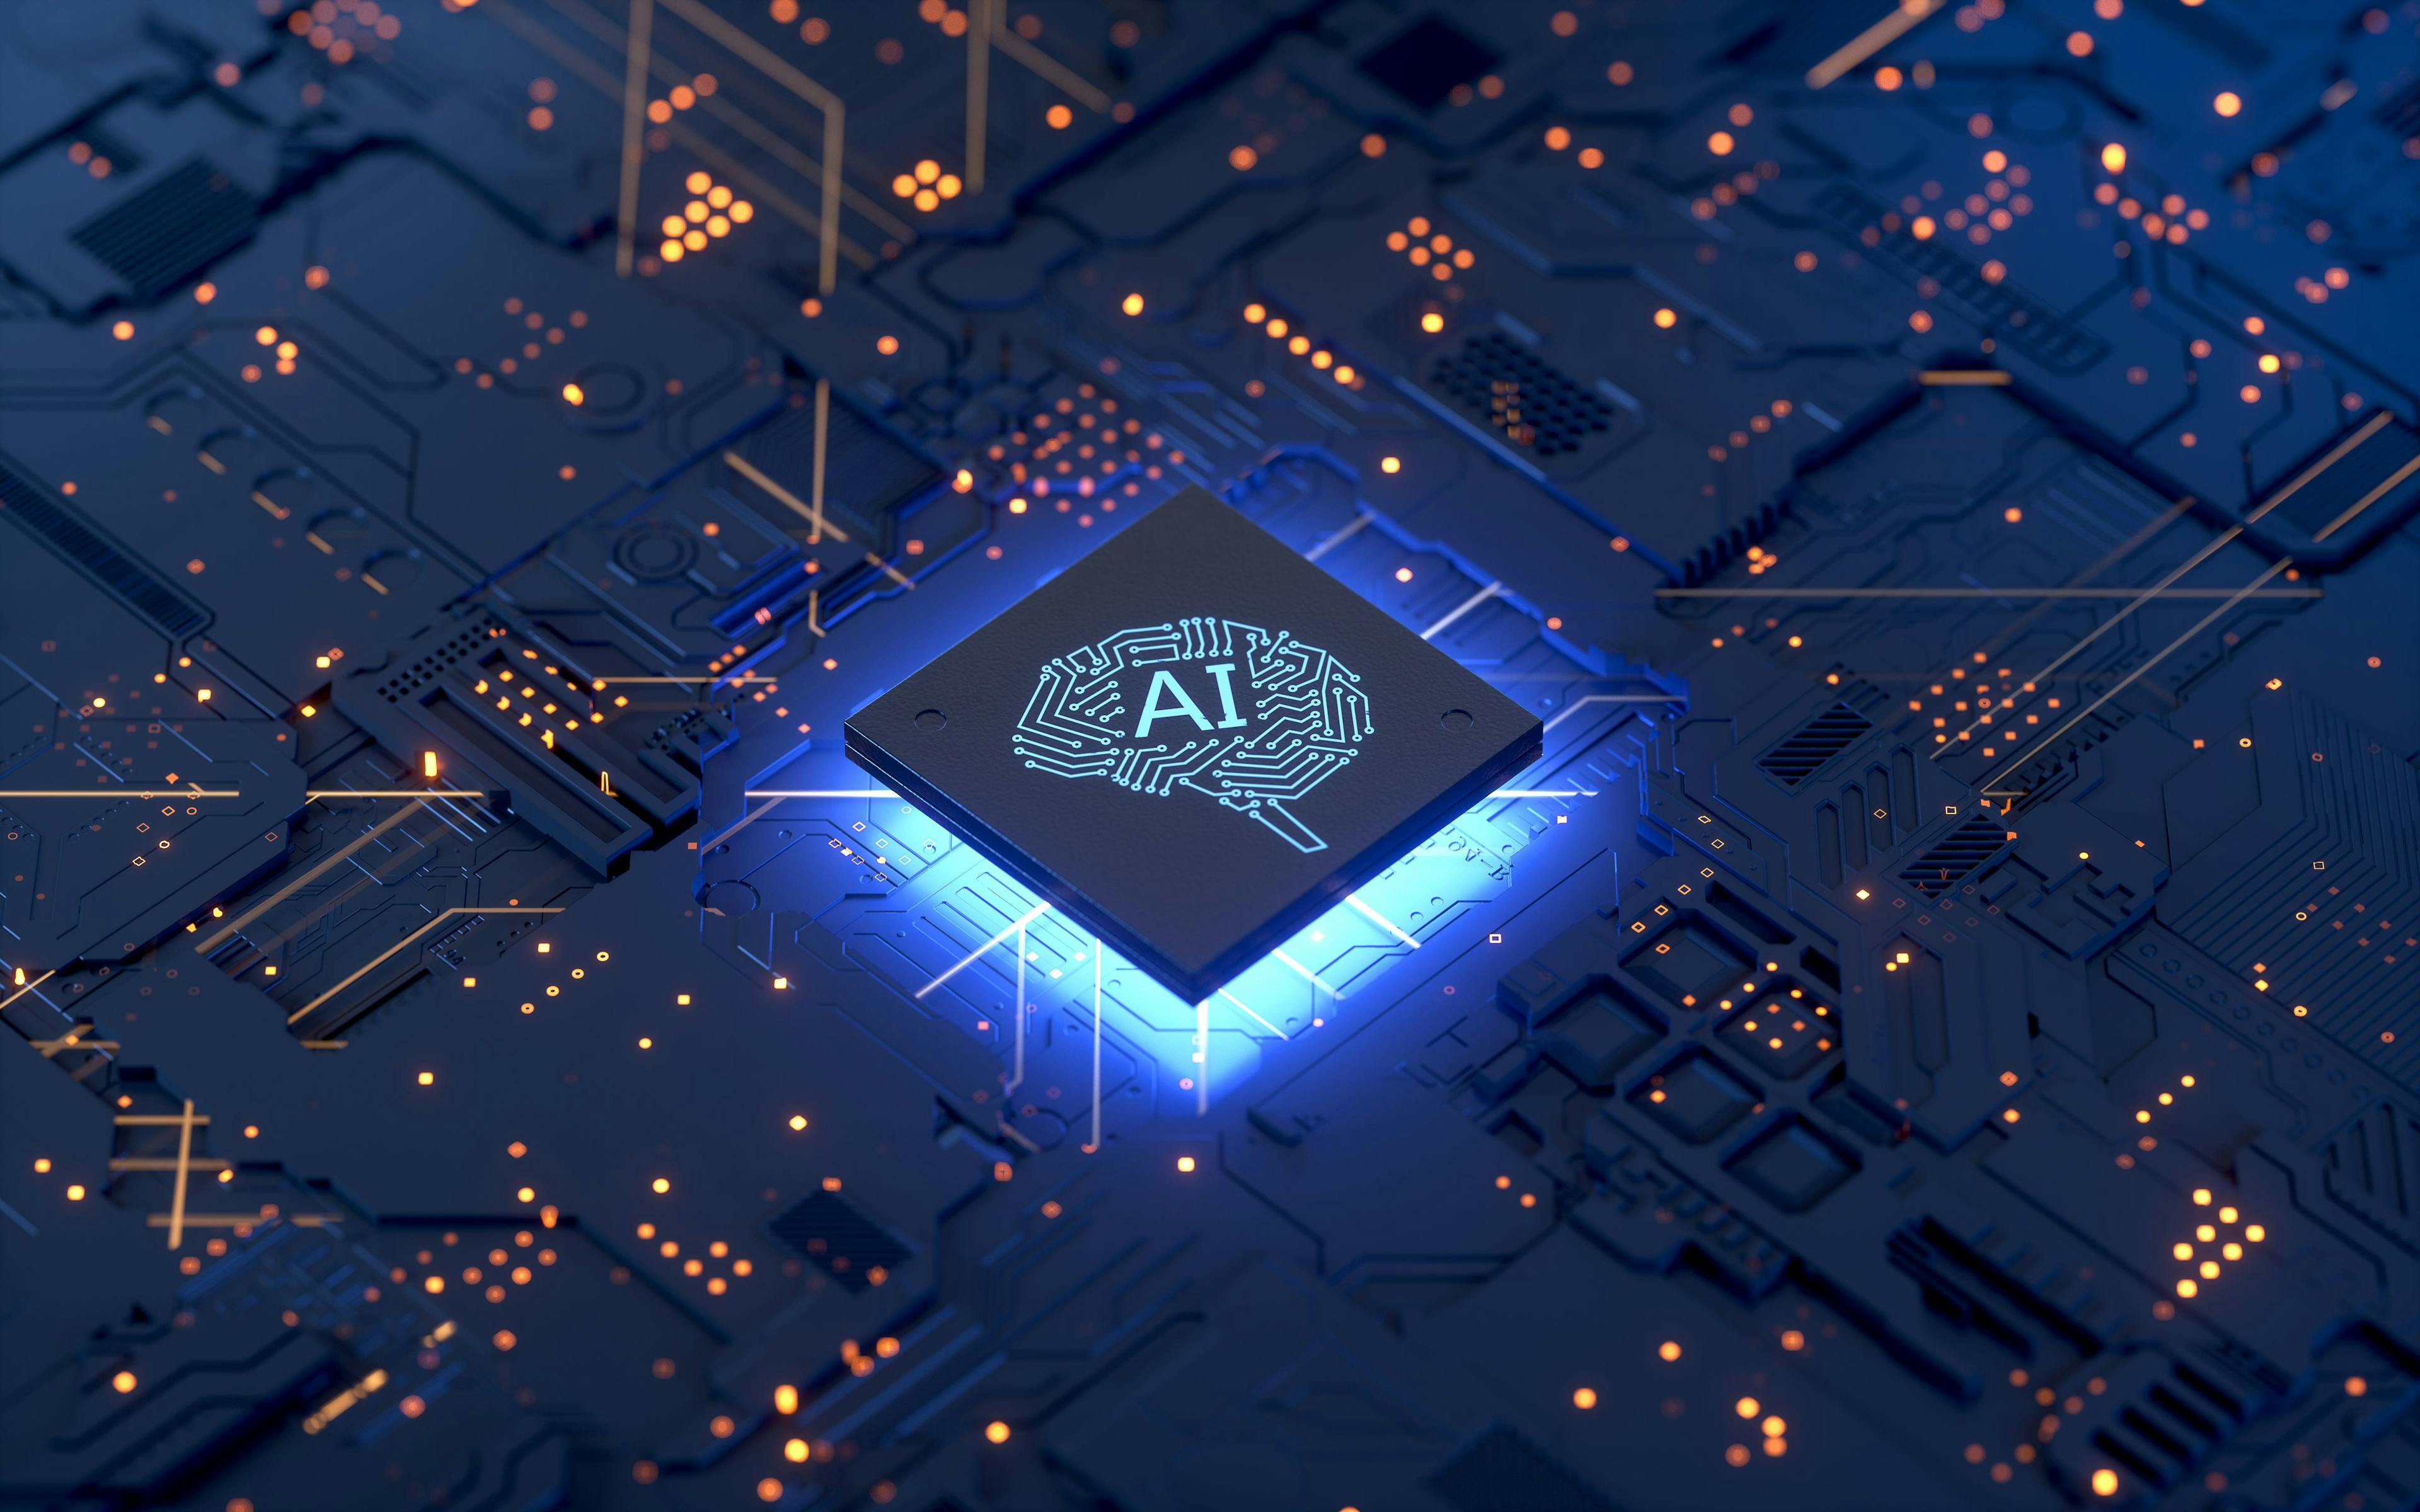 AI Brain chip © Shuo - stock.adobe.com